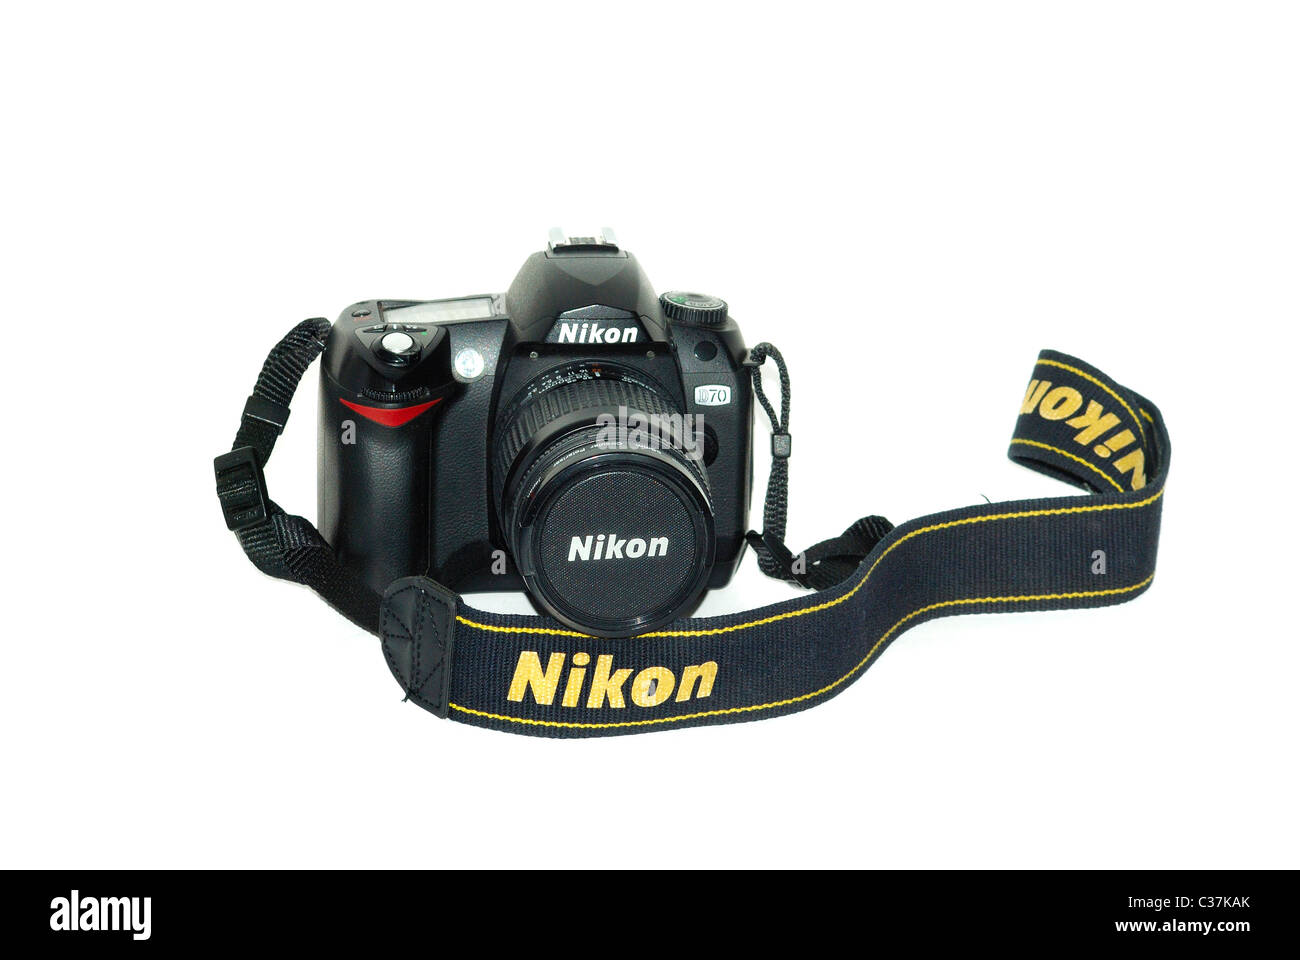 Nikon d70 6 million pixel digital DSLR camera Stock Photo